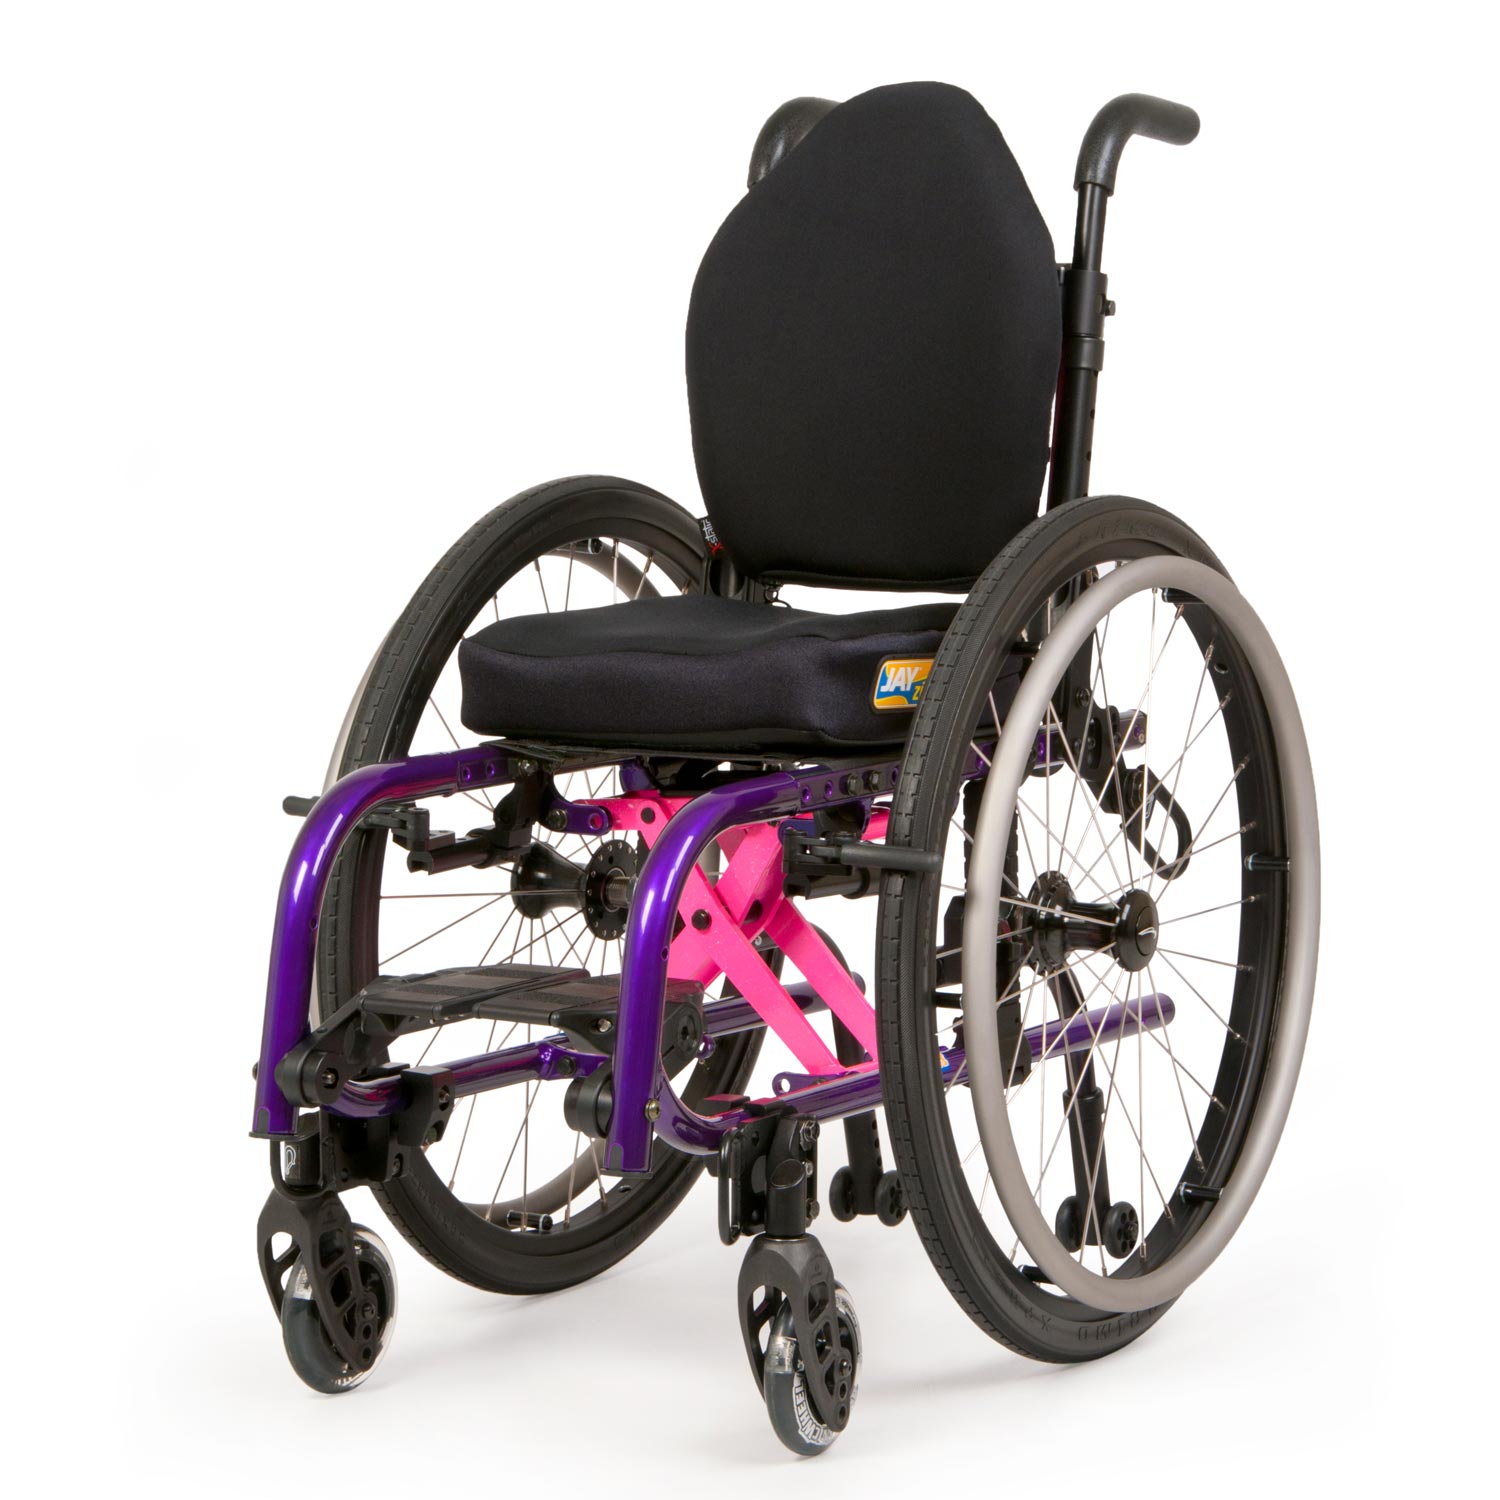 children's wheelchairs for sale